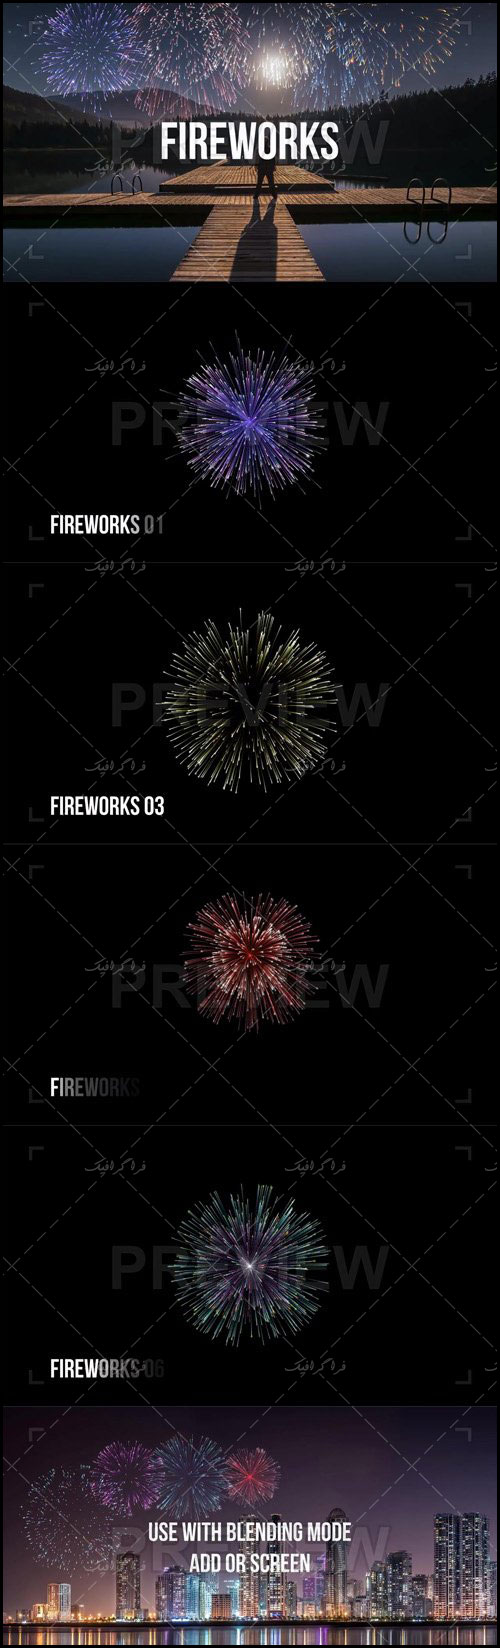 دانلود ویدیو فوتیج آتش بازی - Fireworks Video - شماره 2